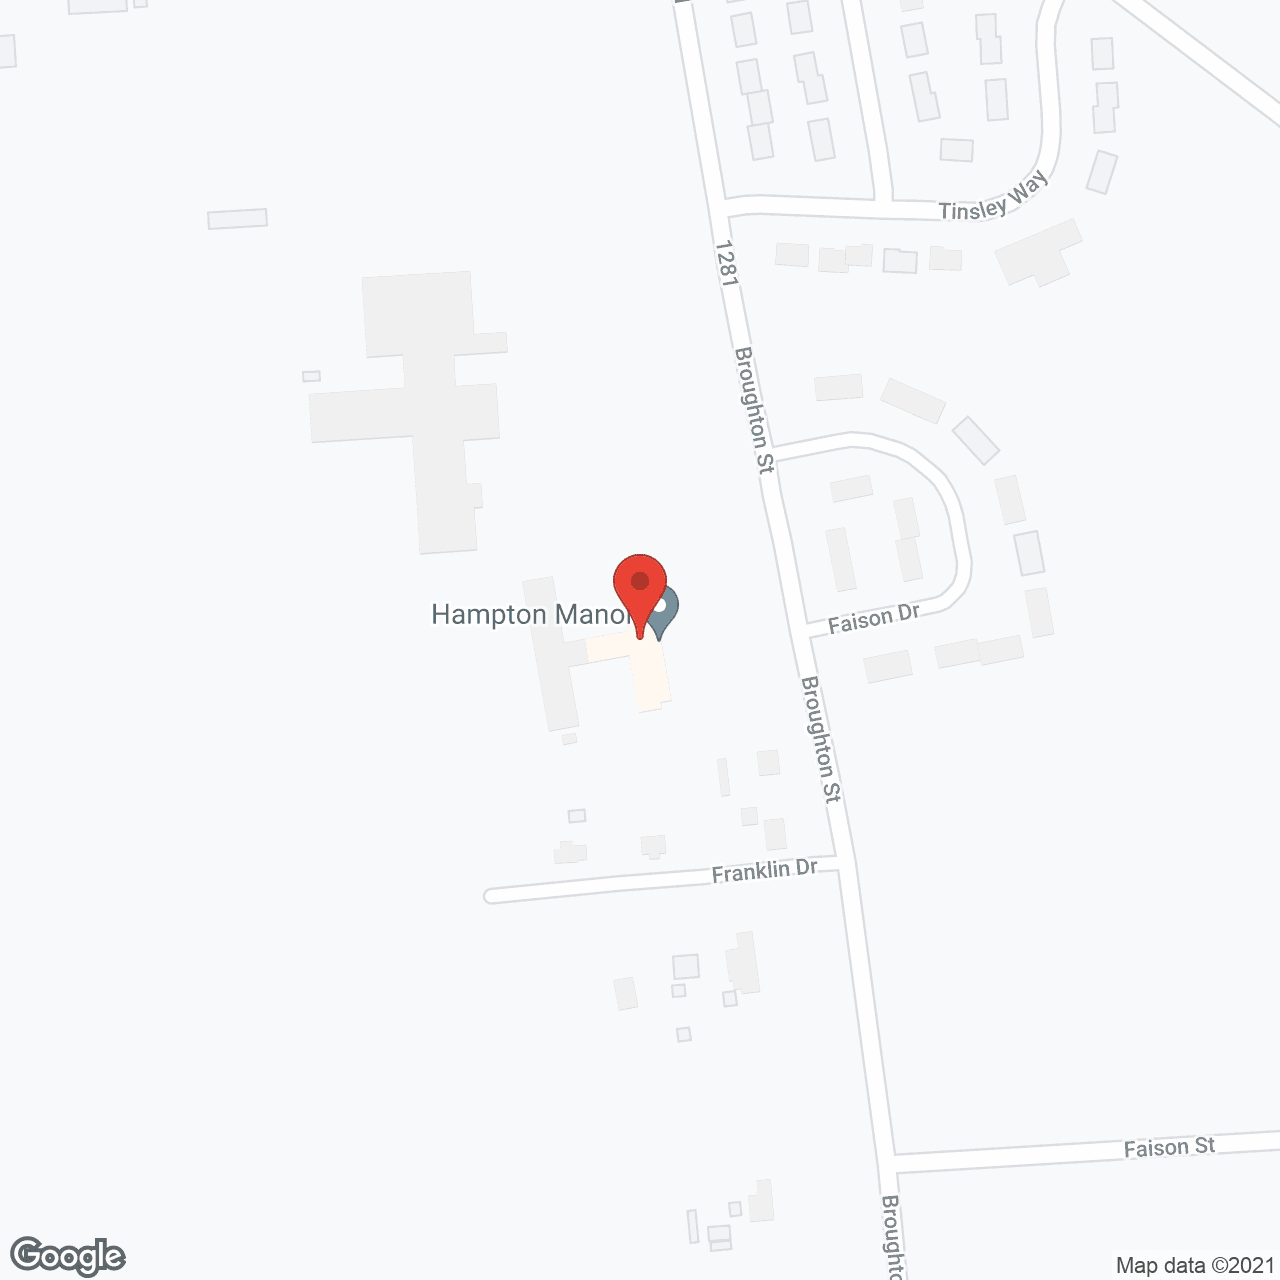 Hampton Manor in google map